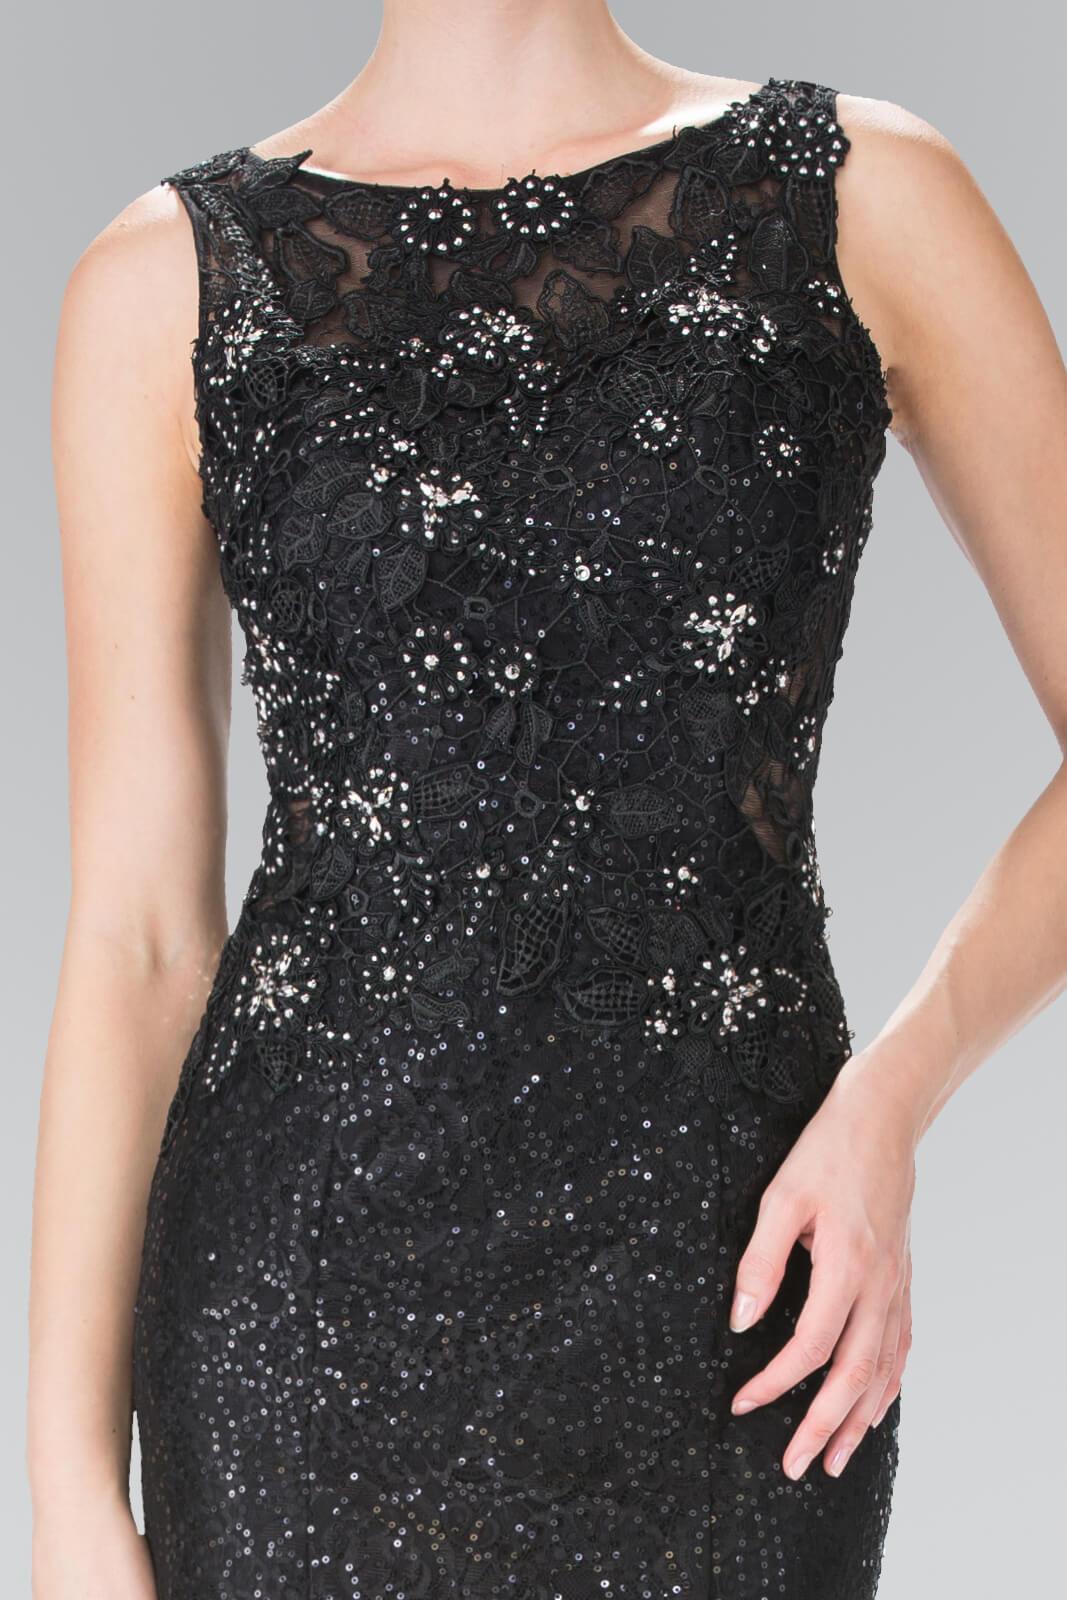 Prom Long Formal Dress Sequined Black Evening Gown - The Dress Outlet Elizabeth K